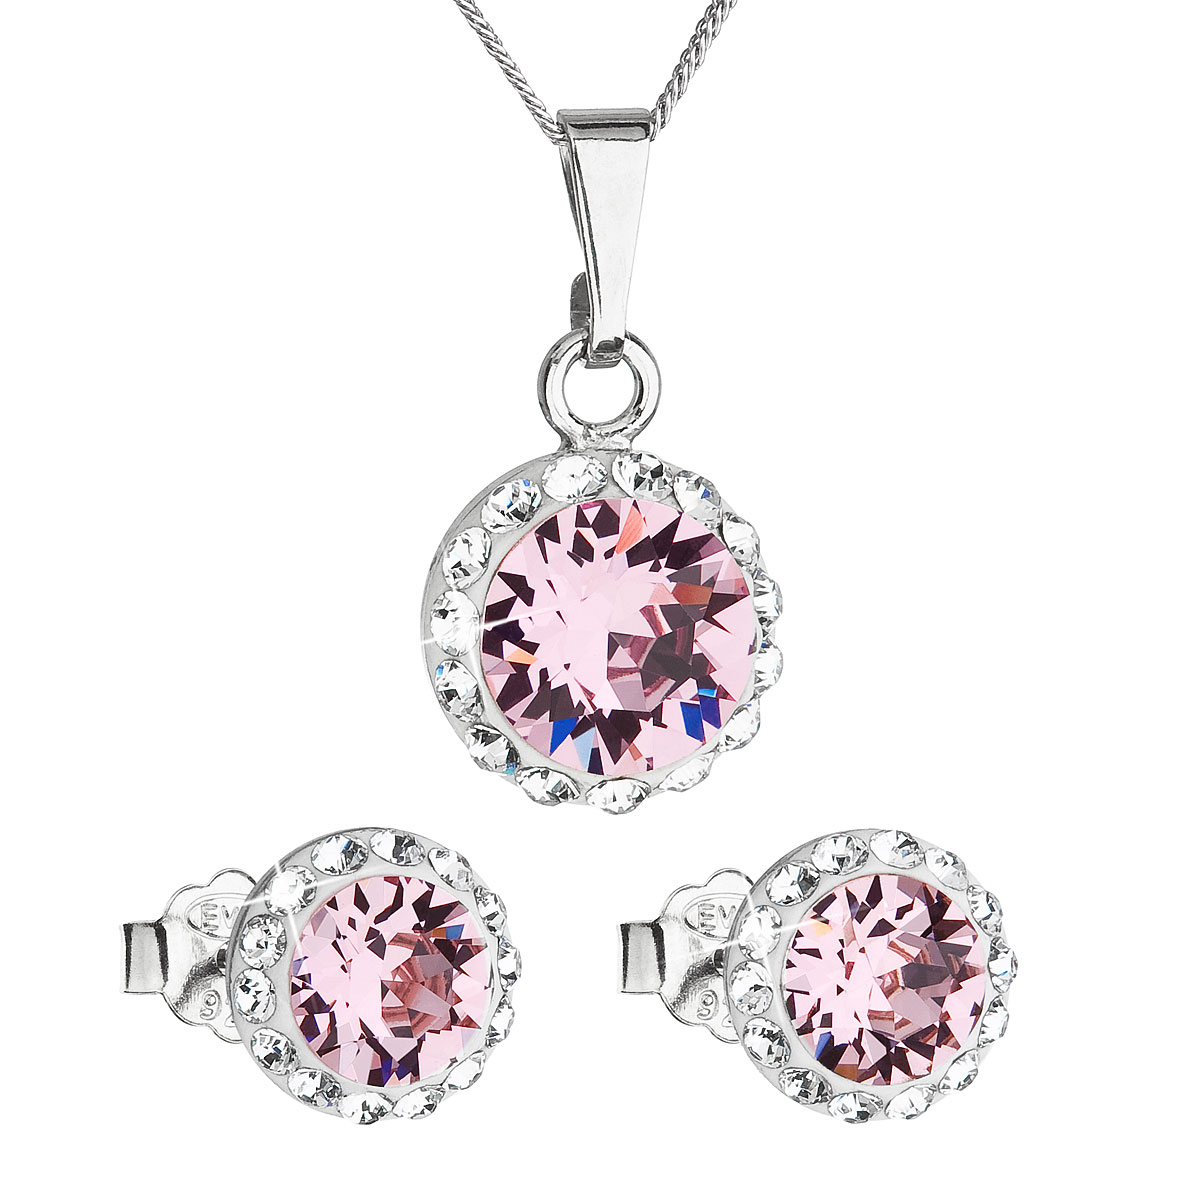 Evolution Group Sada šperků s krystaly Swarovski náušnice, řetízek a přívěsek růžové kulaté 39152.3 rose